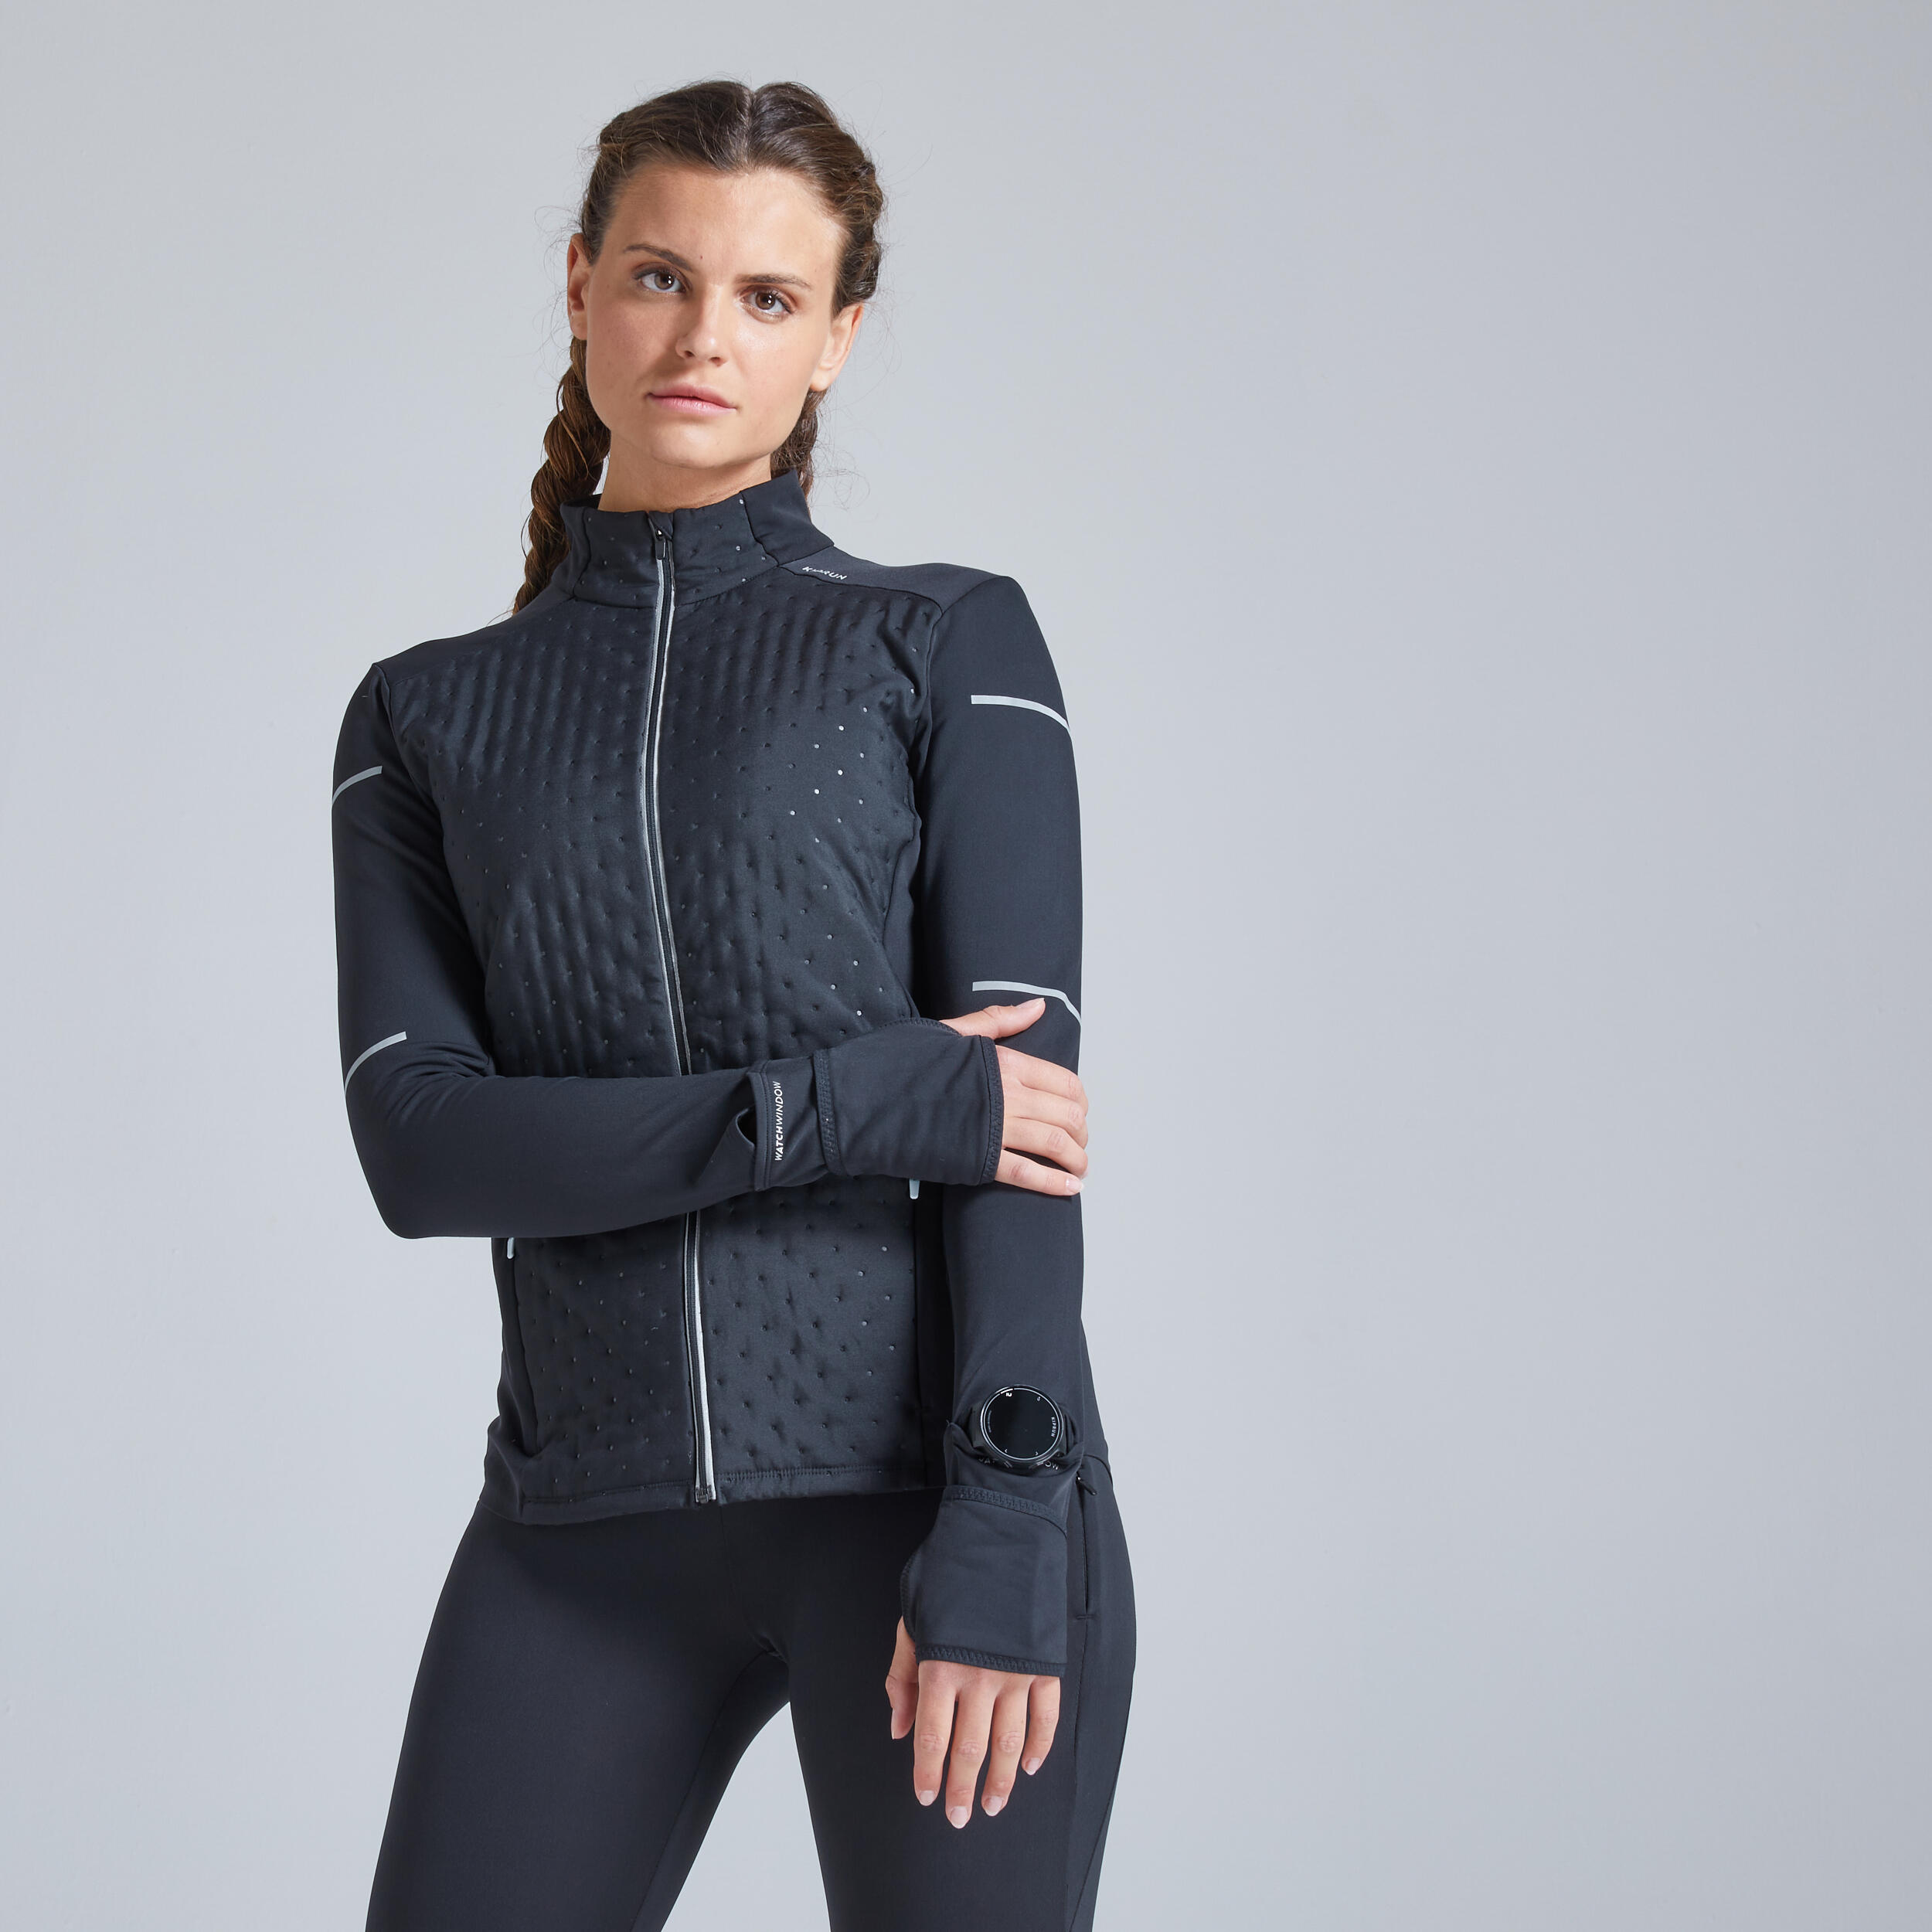 ژاکت طراحی شده برای دویدن در هوای سرد